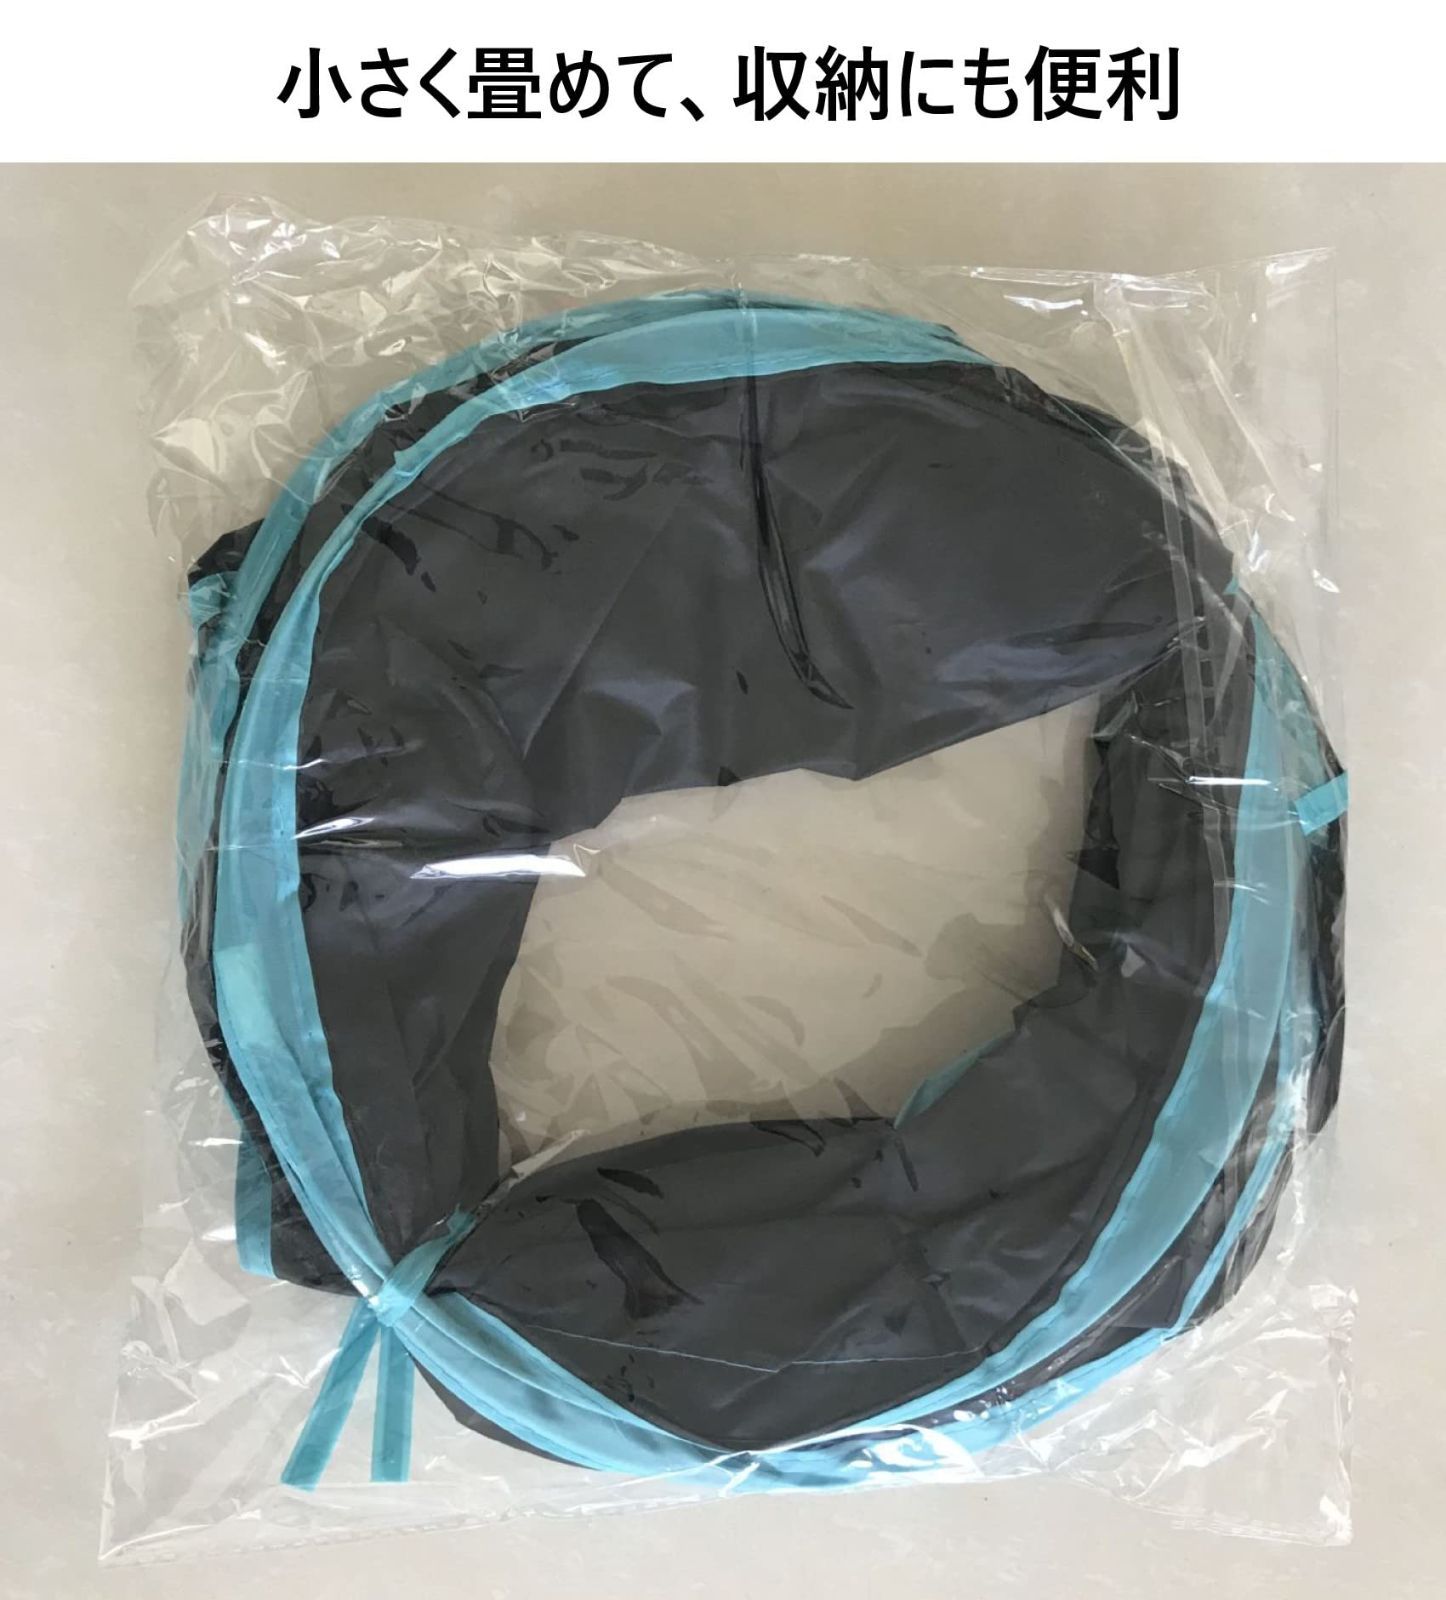 【色: ブルーブラック】Mies′ 折りたたみ式 S字型 猫トンネル 猫おもちゃ